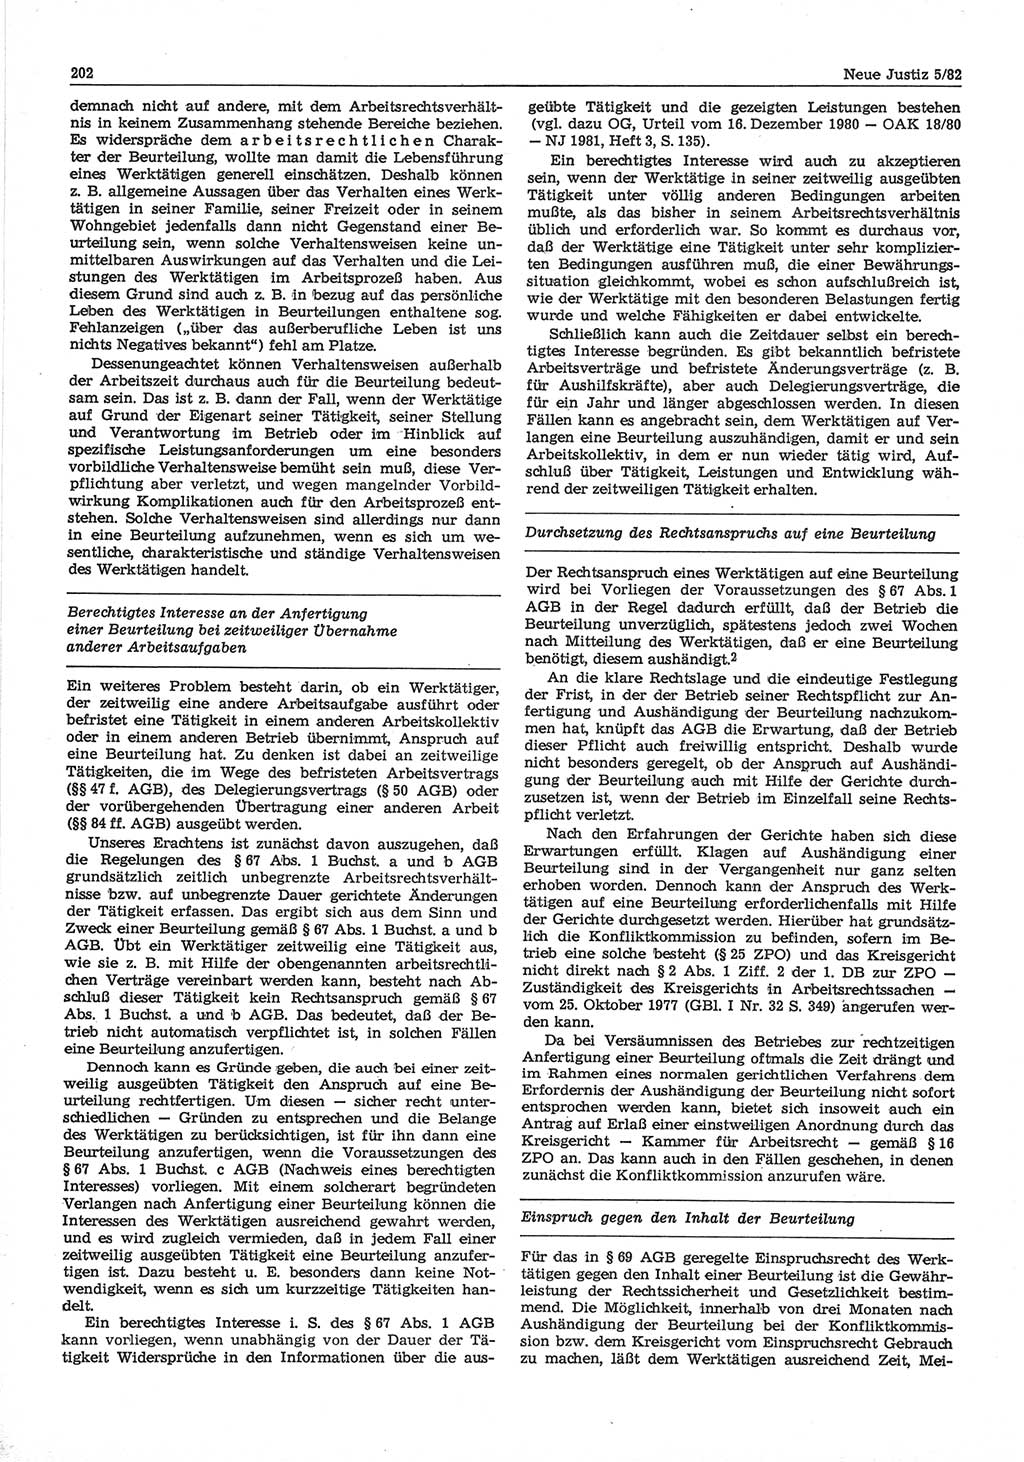 Neue Justiz (NJ), Zeitschrift für sozialistisches Recht und Gesetzlichkeit [Deutsche Demokratische Republik (DDR)], 36. Jahrgang 1982, Seite 202 (NJ DDR 1982, S. 202)